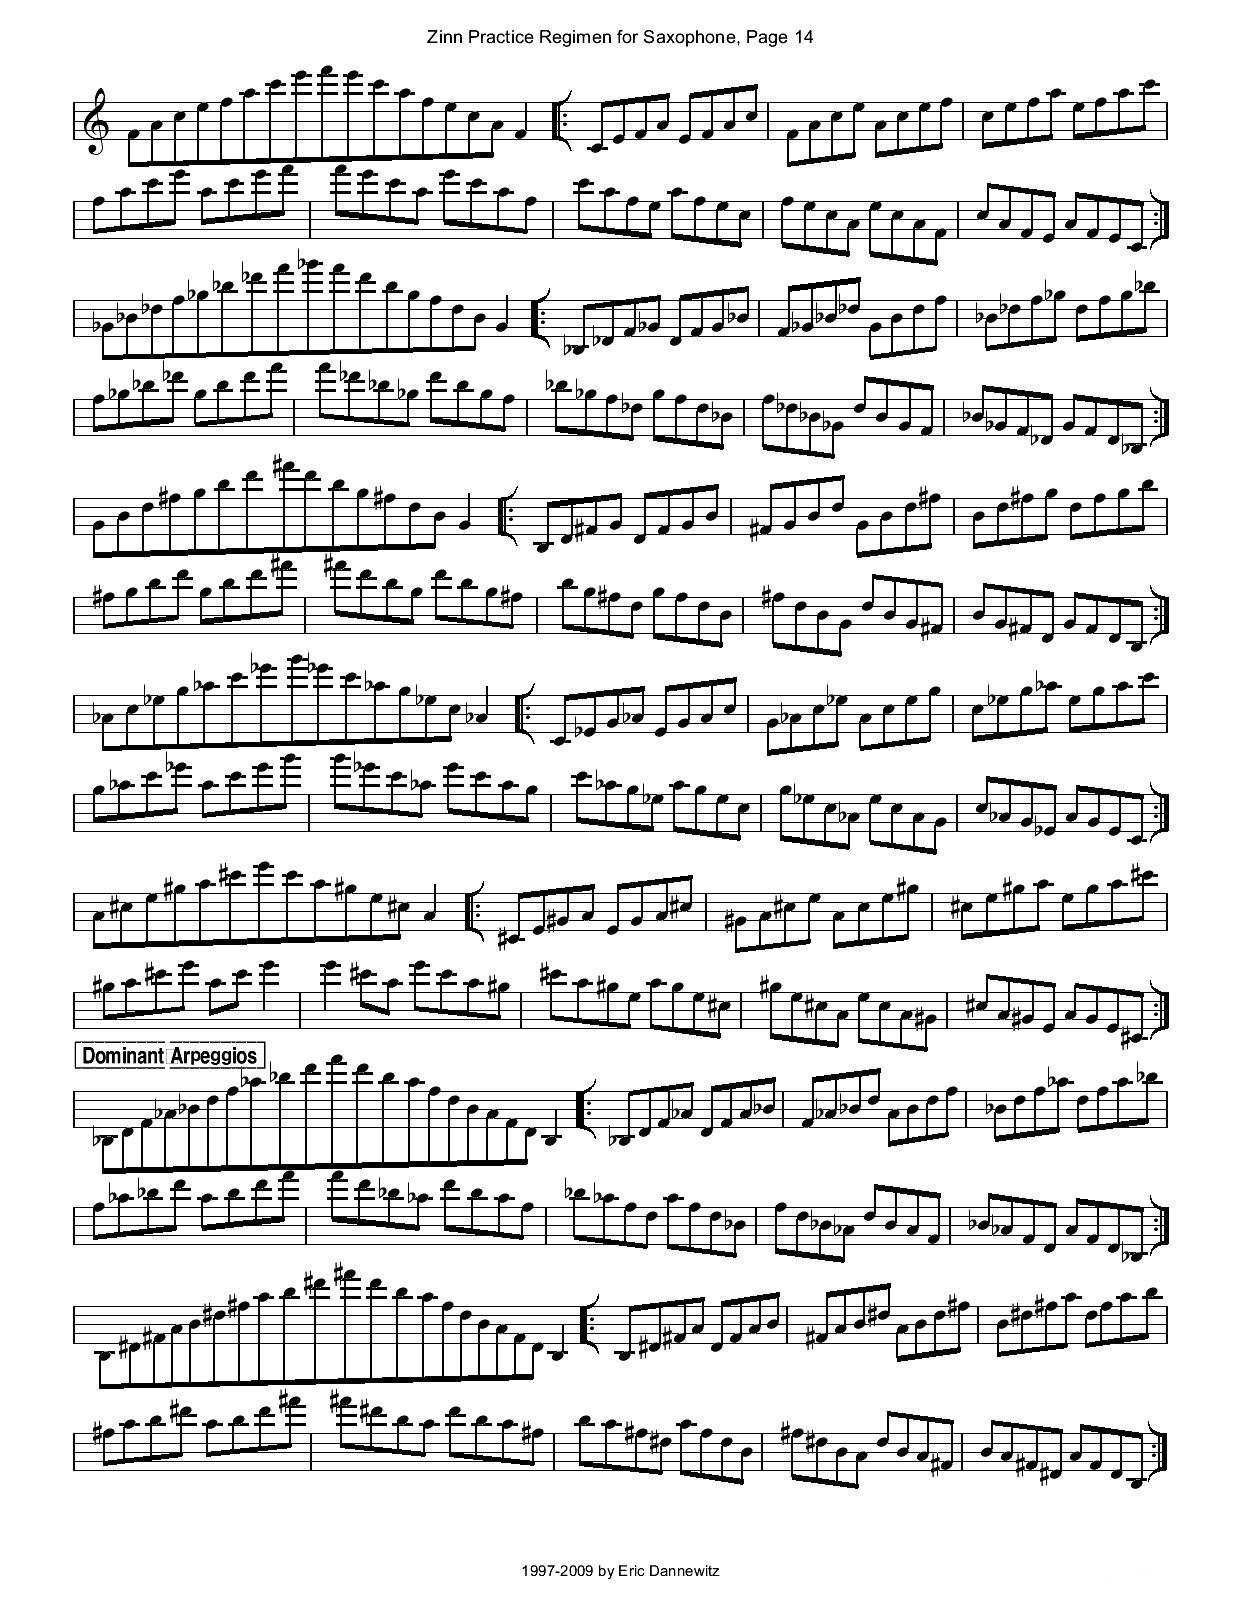 ZinnRegimenSax2009练习曲萨克斯曲谱（图17）